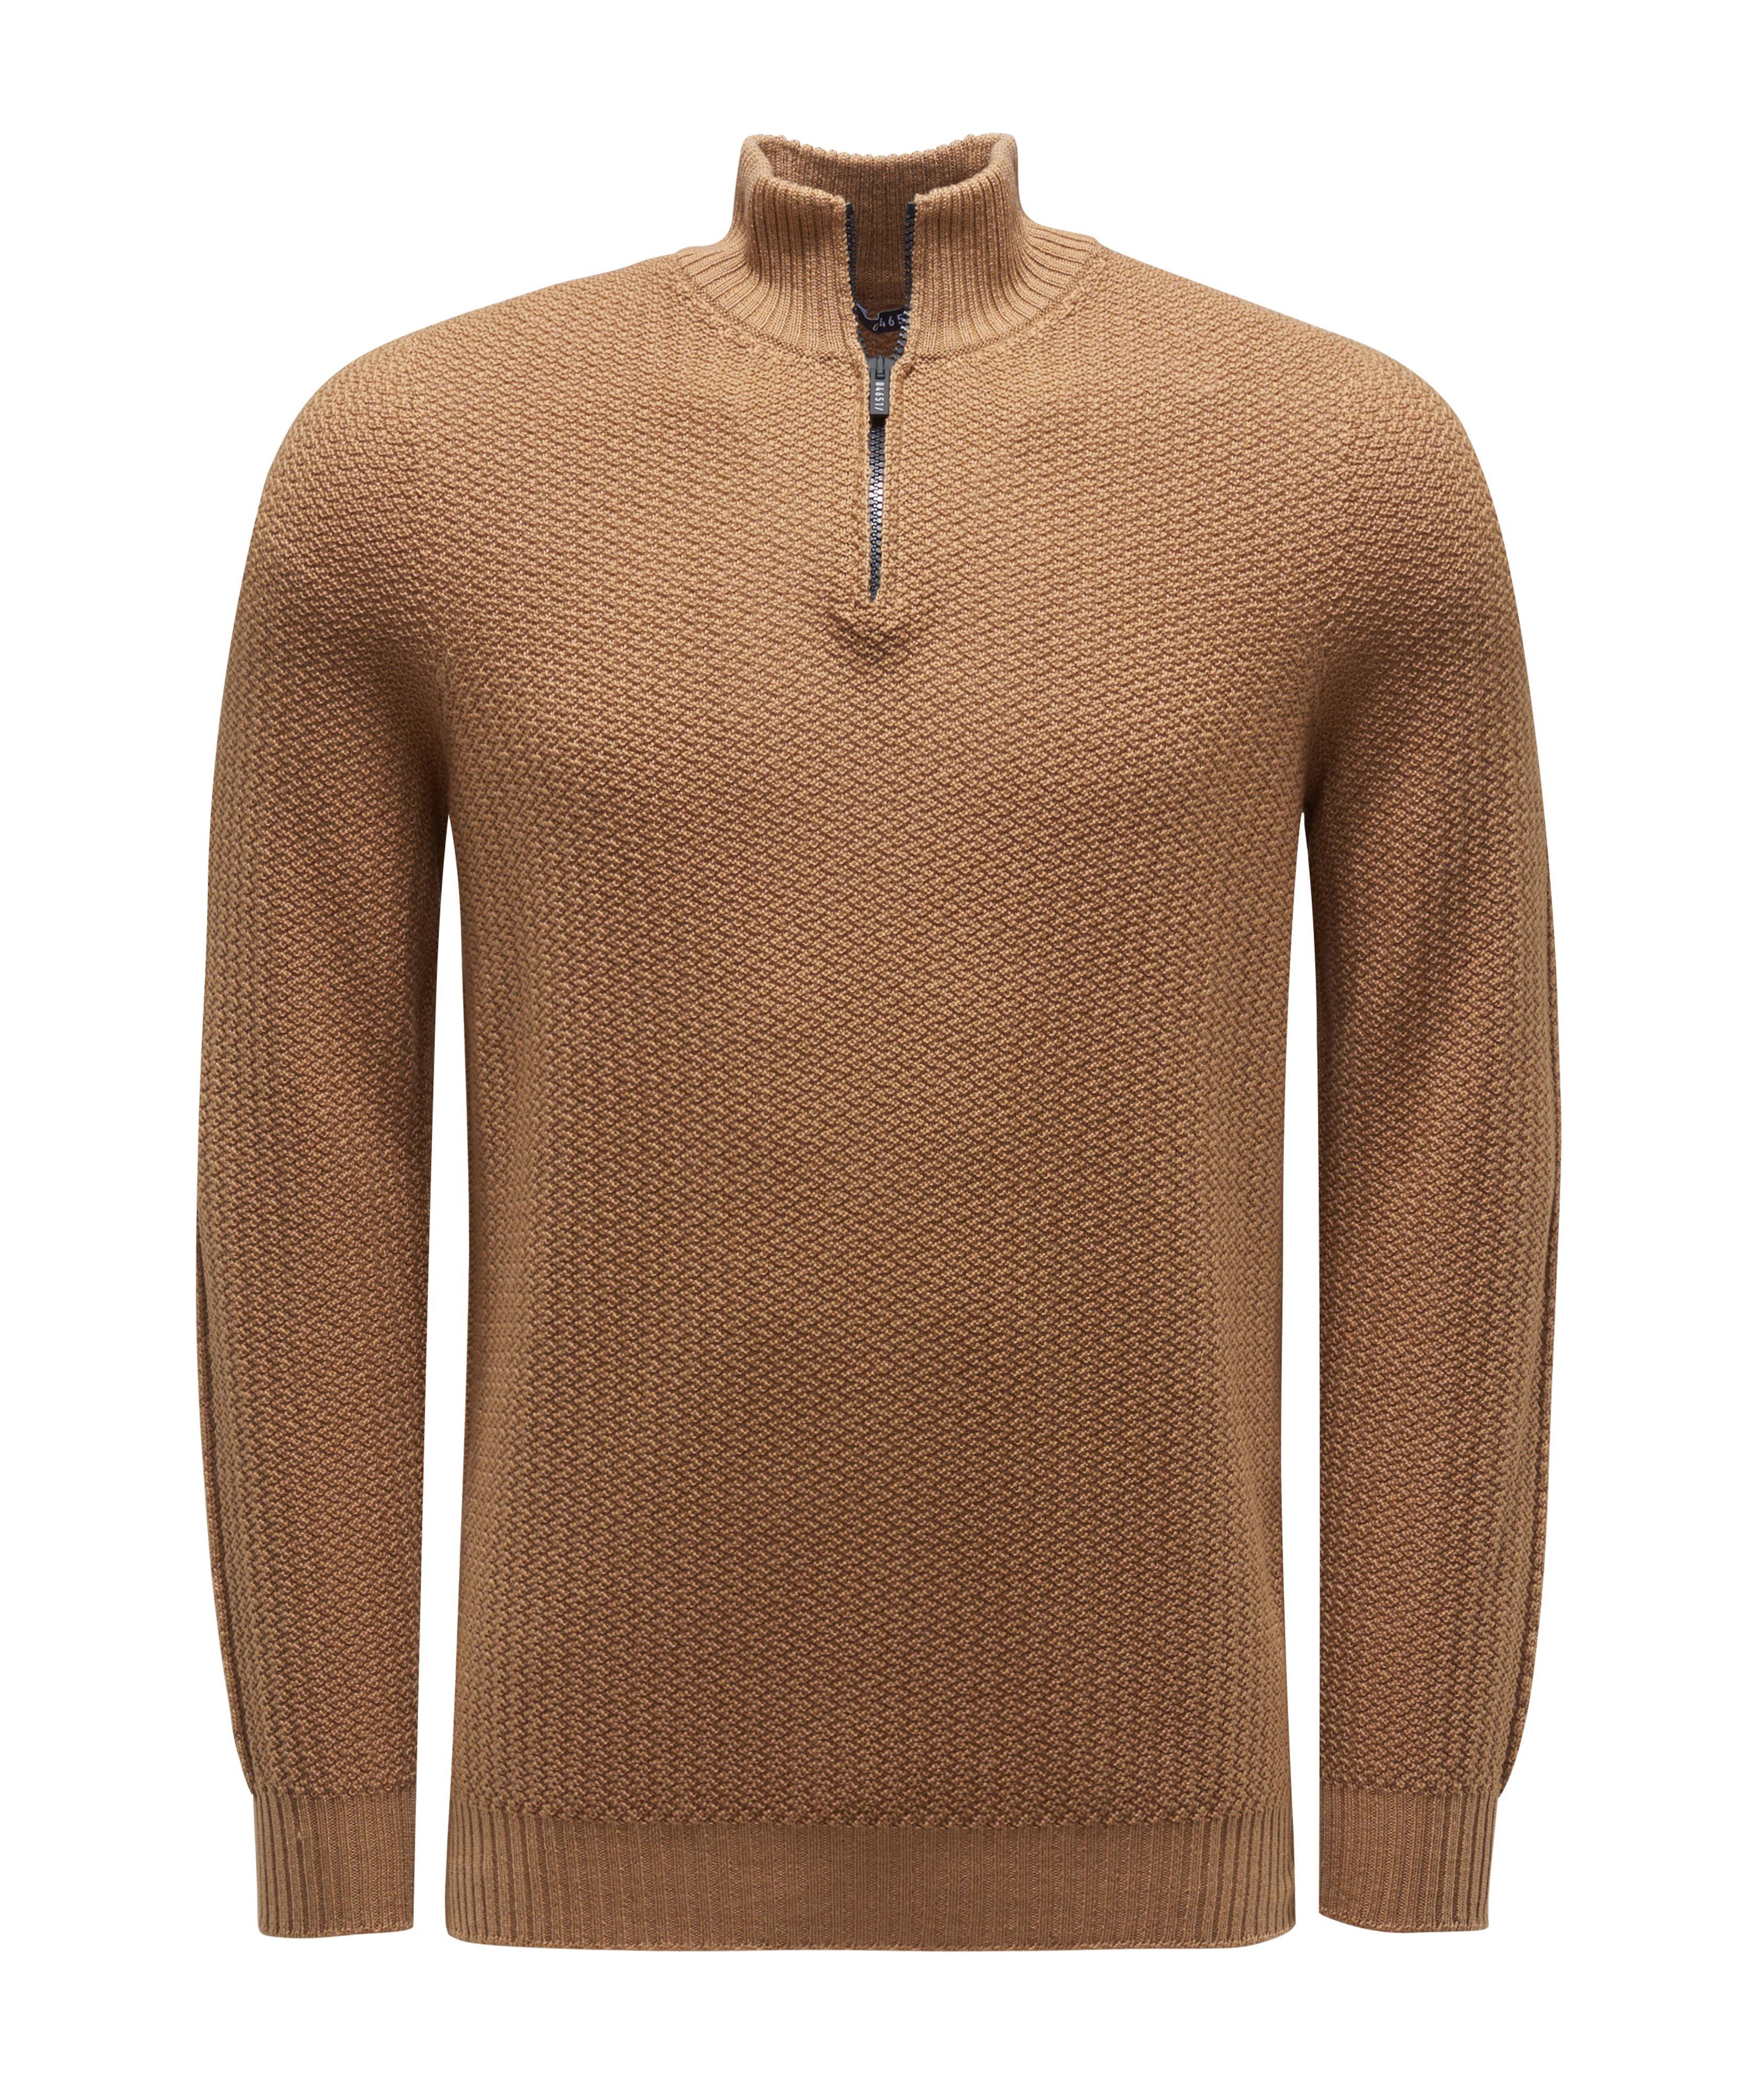 Half-Zip Merino Sweater image 0